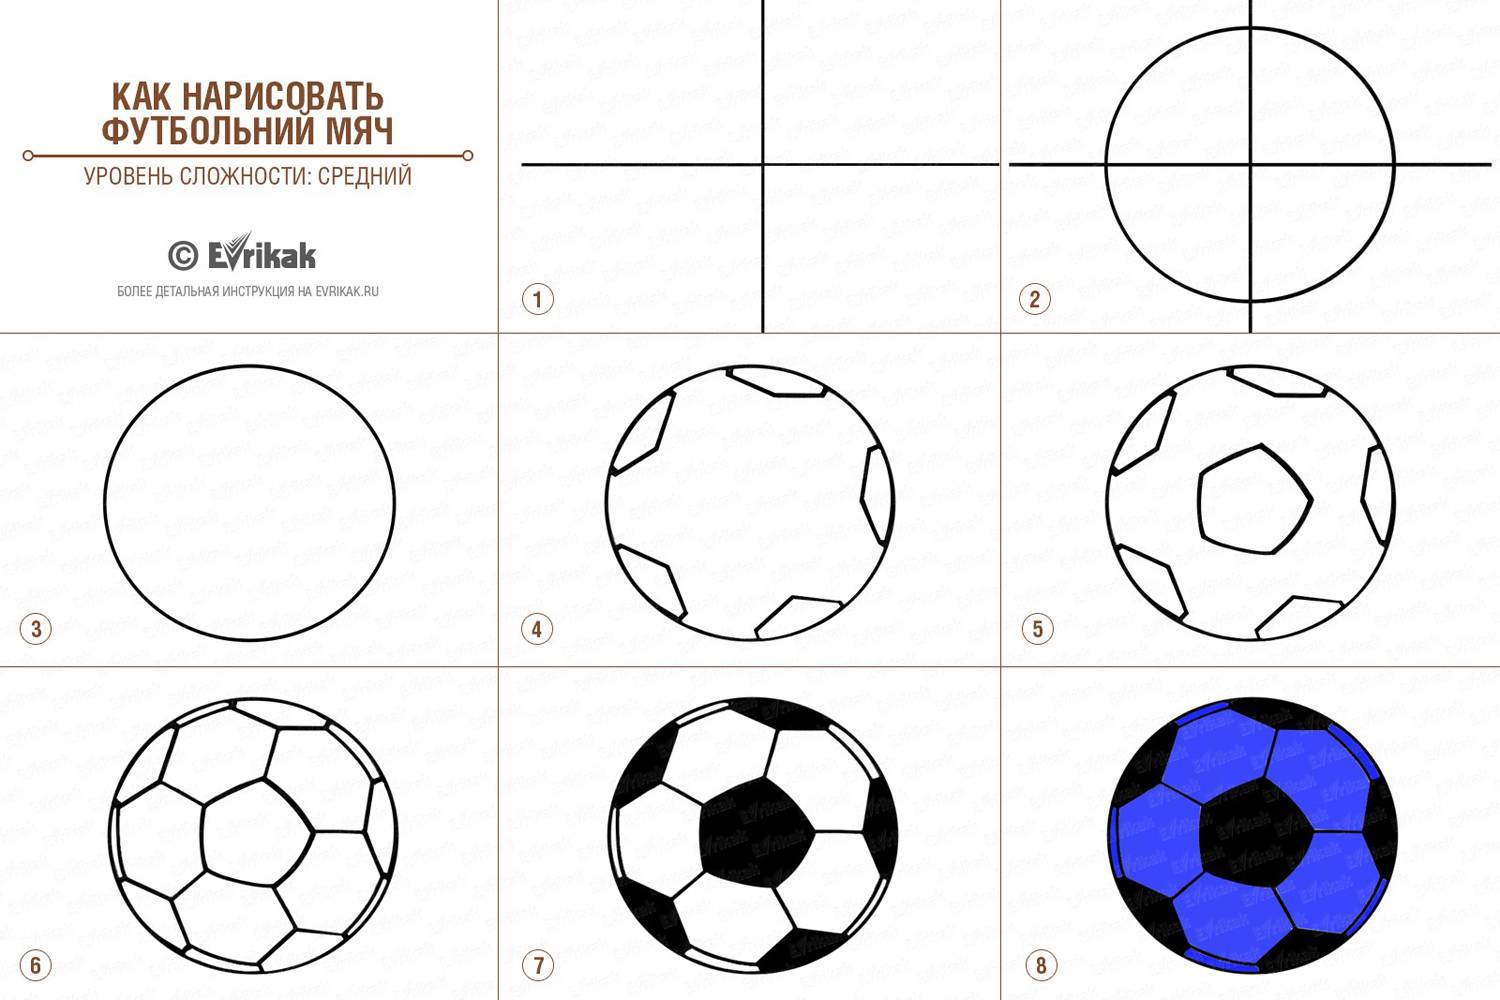 collage_как нарисовать футбольний мяч(уровень слржности средний)